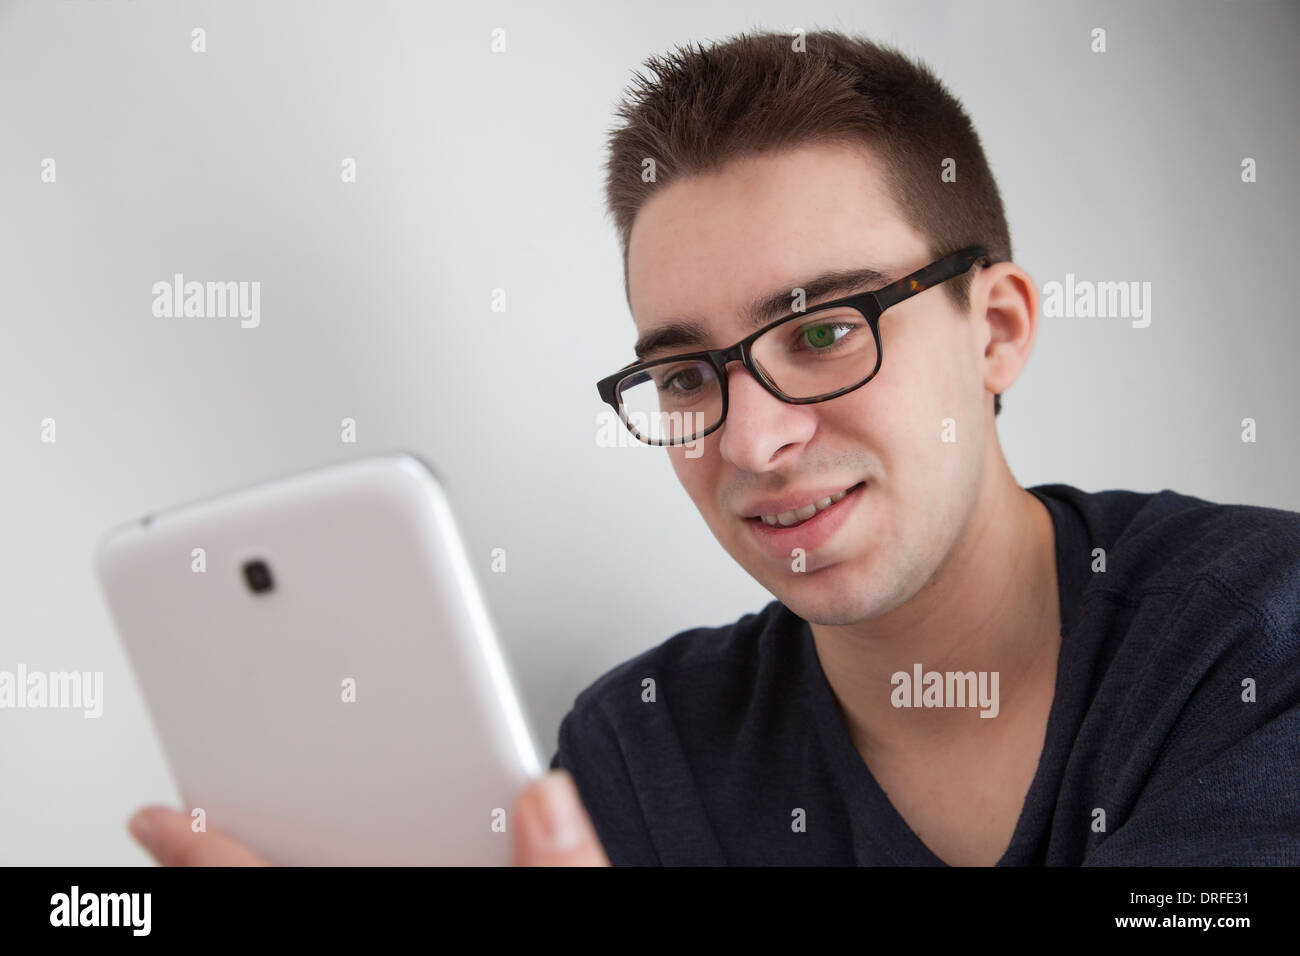 Sorridente buona ricerca giovane con gli occhiali, sorridenti mentre si tiene un bianco digitale compressa. Foto Stock